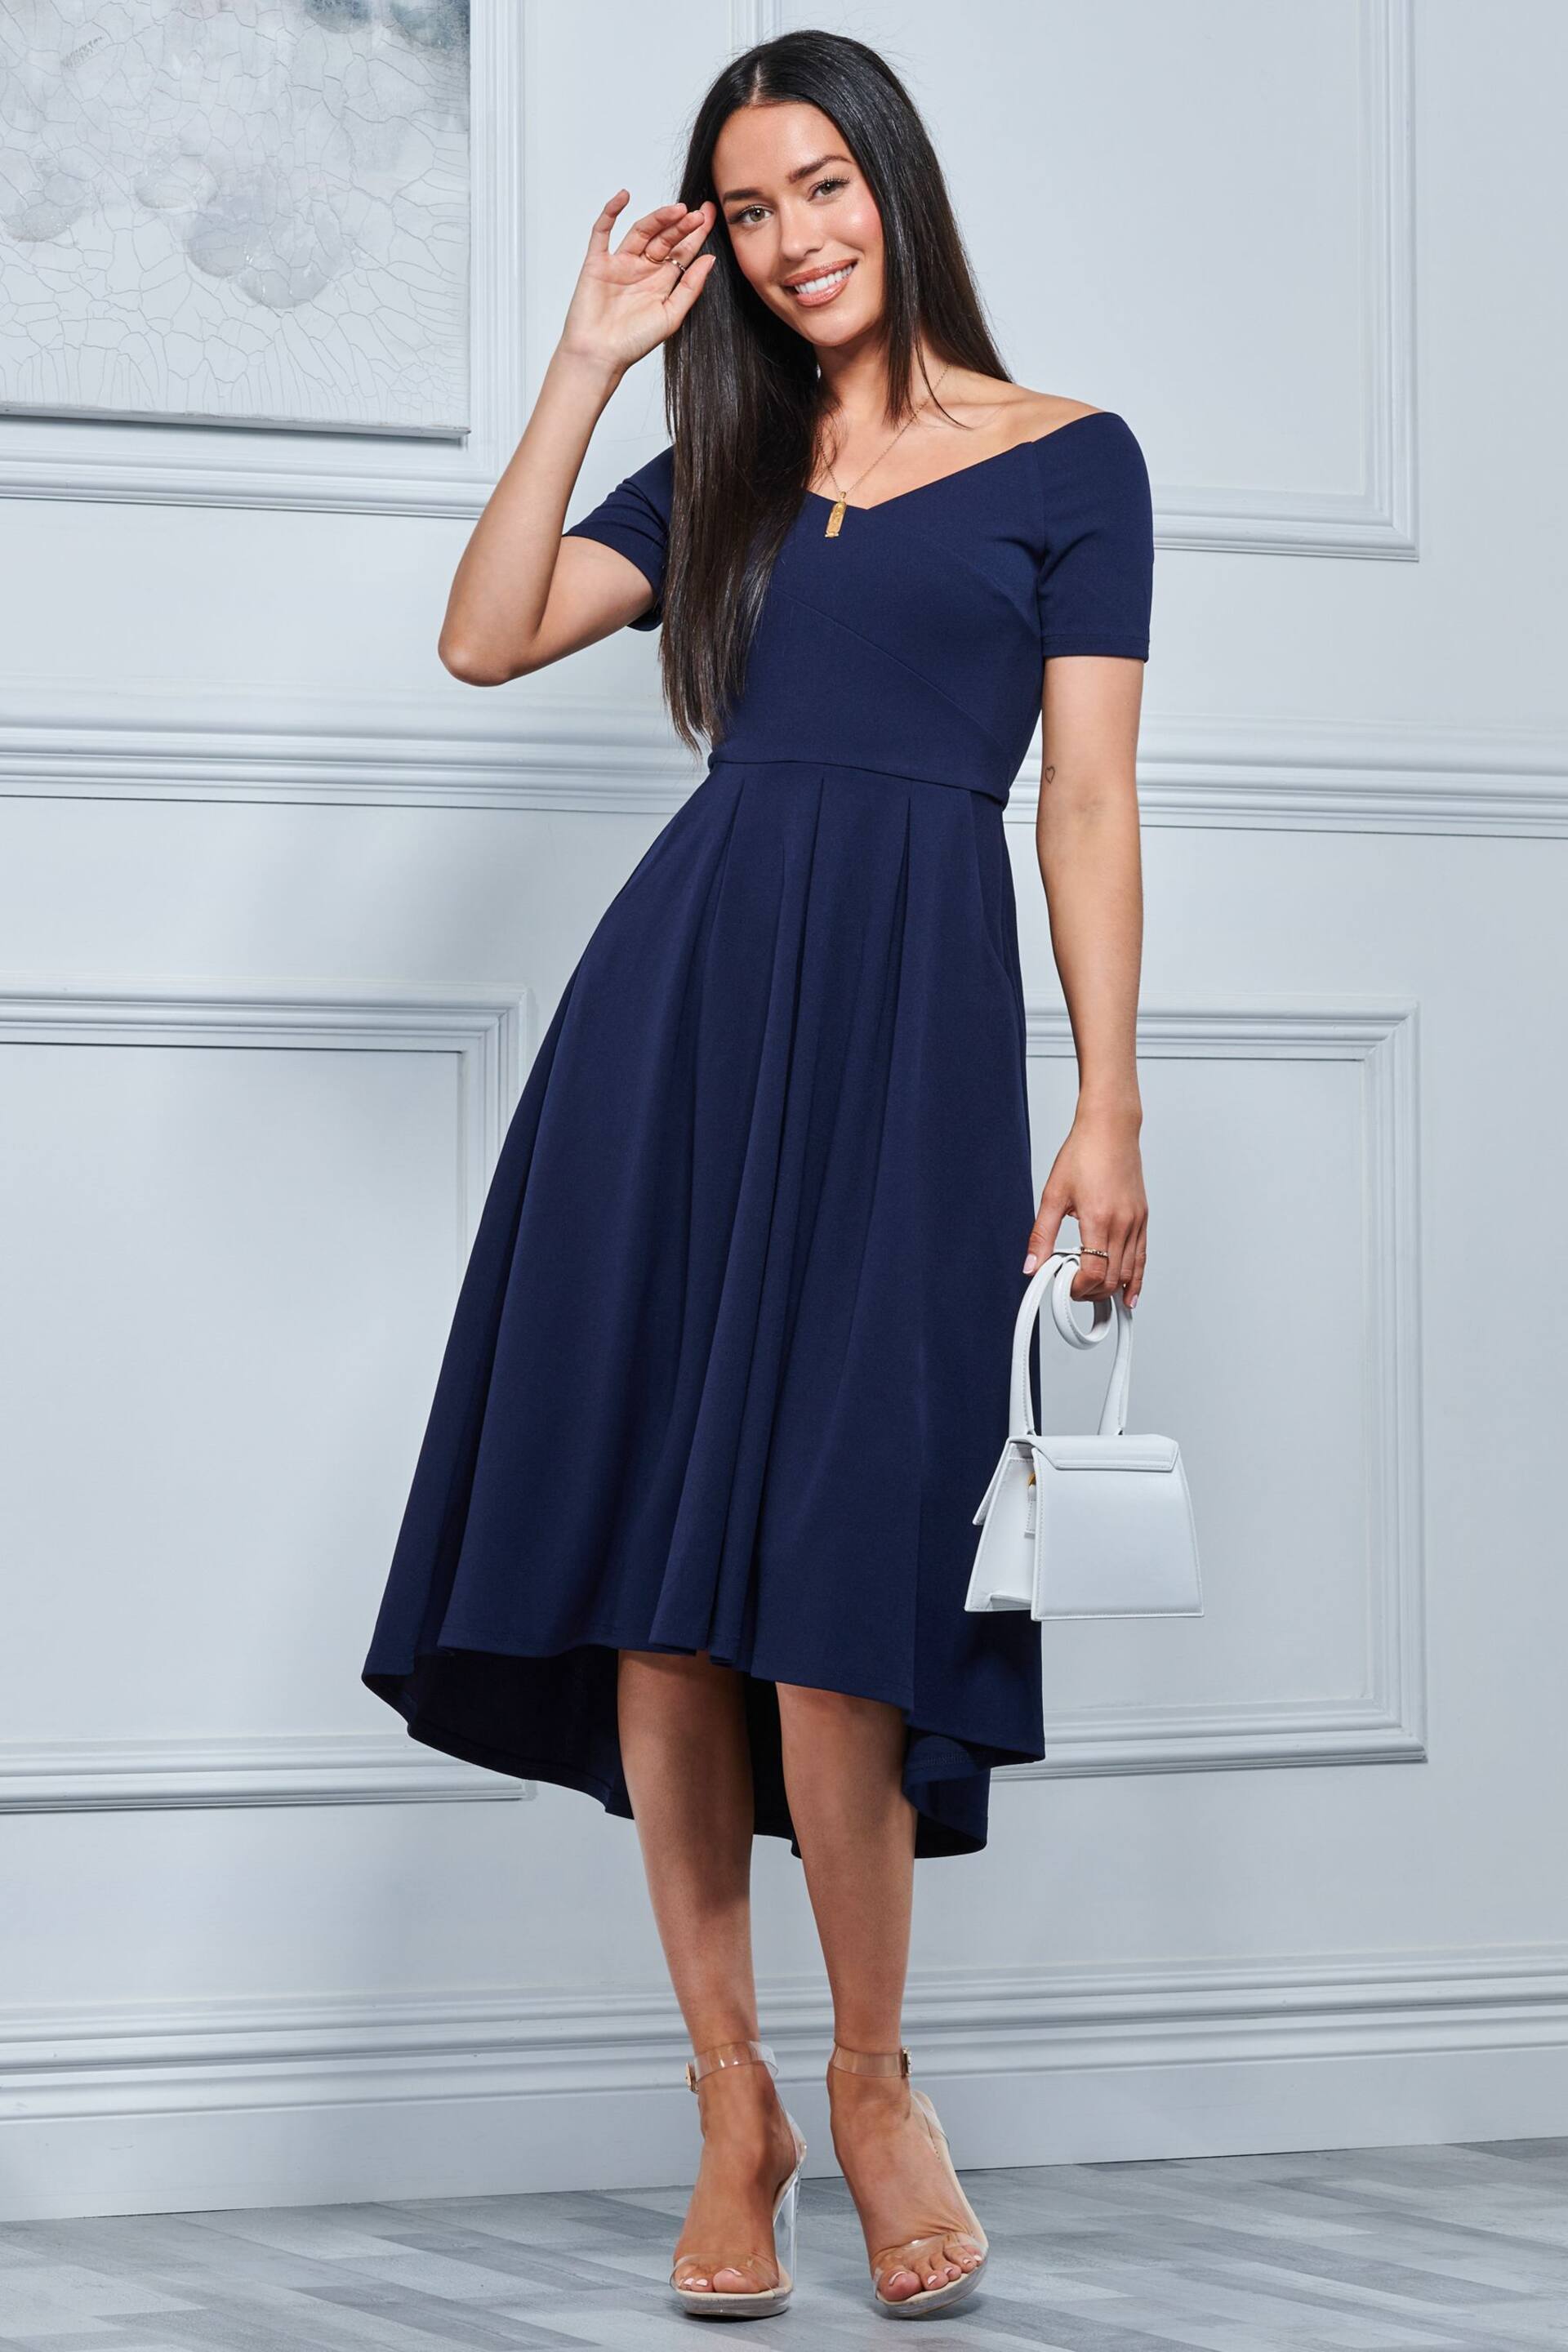 Jolie Moi Navy Blue Lenora Fit & Flare Midi Dress - Image 3 of 5